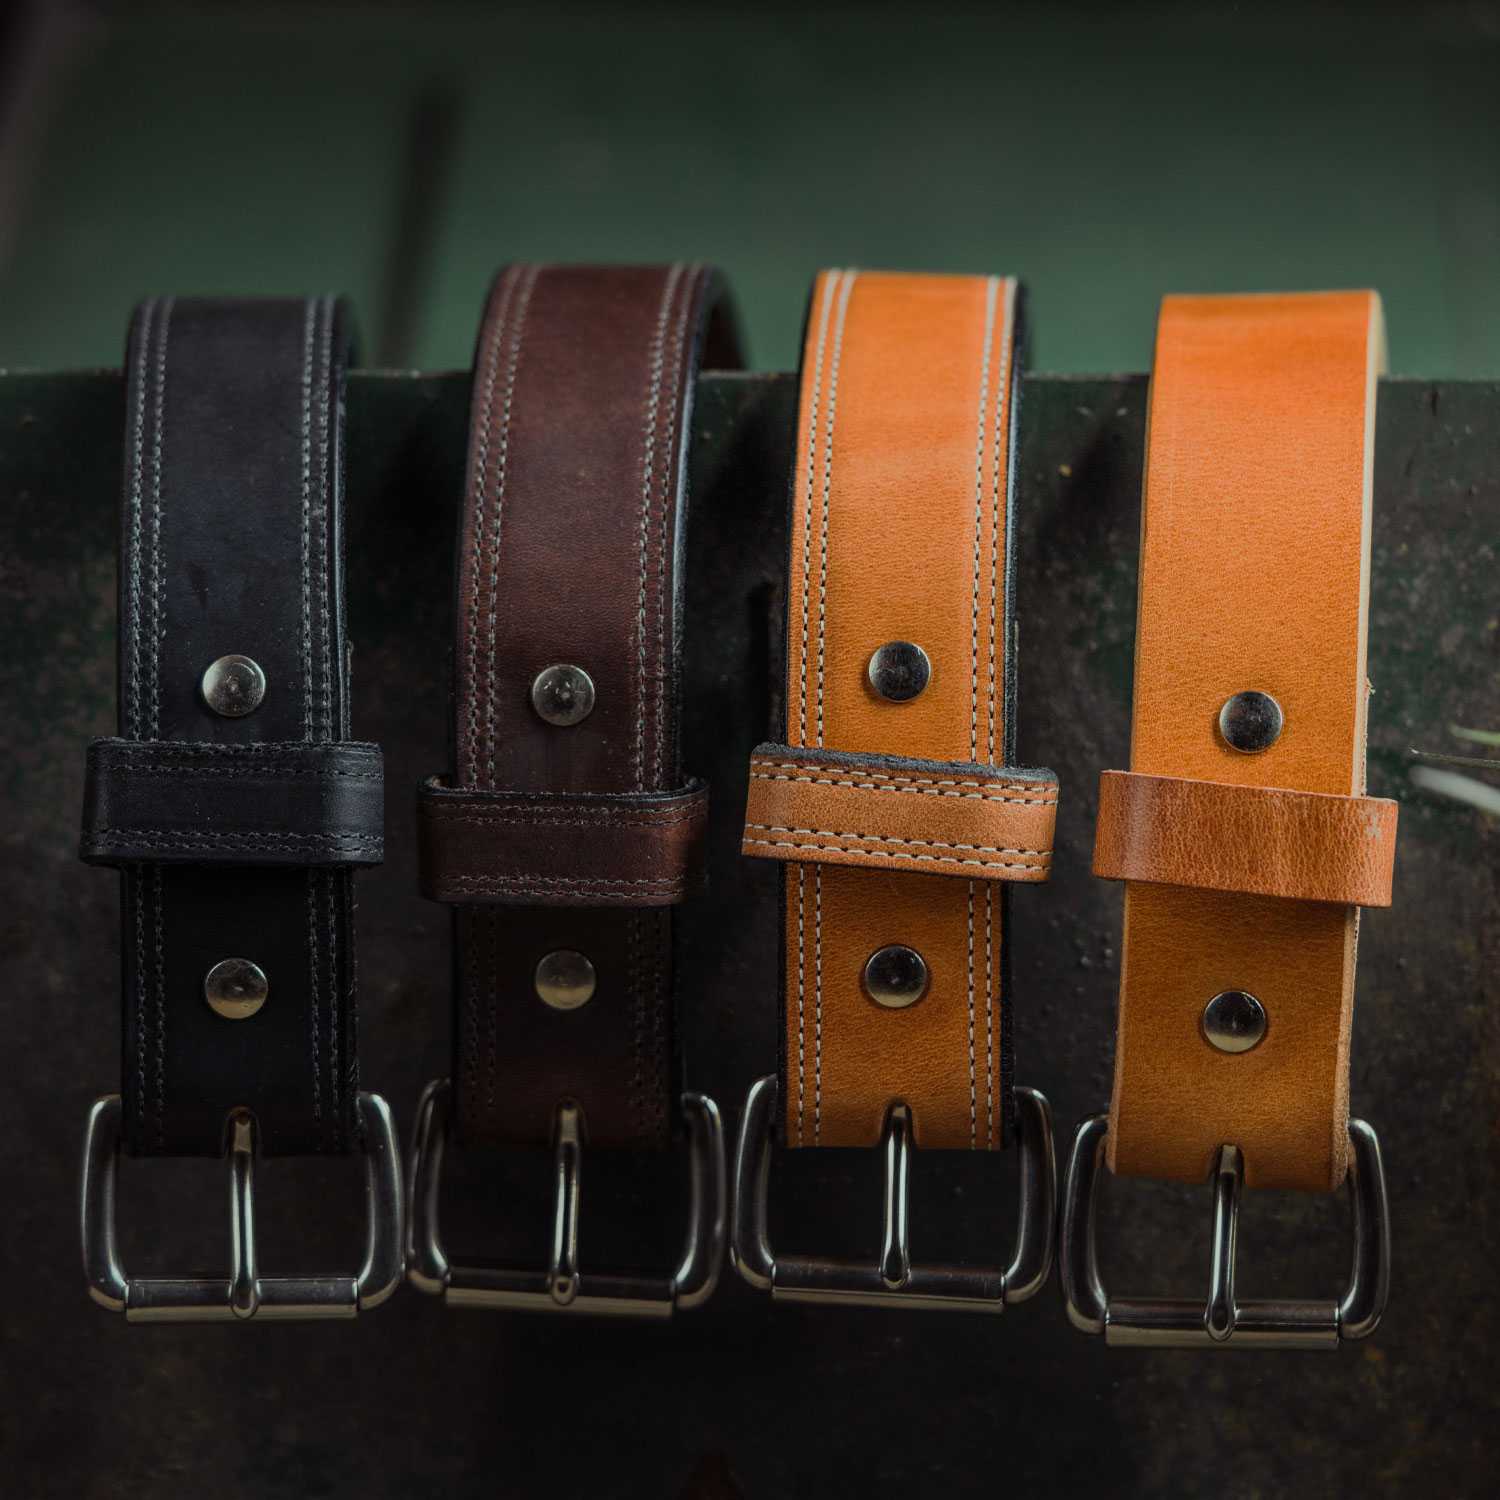 https://www.hanksbelts.com/cdn/shop/products/hanks-old-world-harness-belt-collection_2000x.jpg?v=1623953776